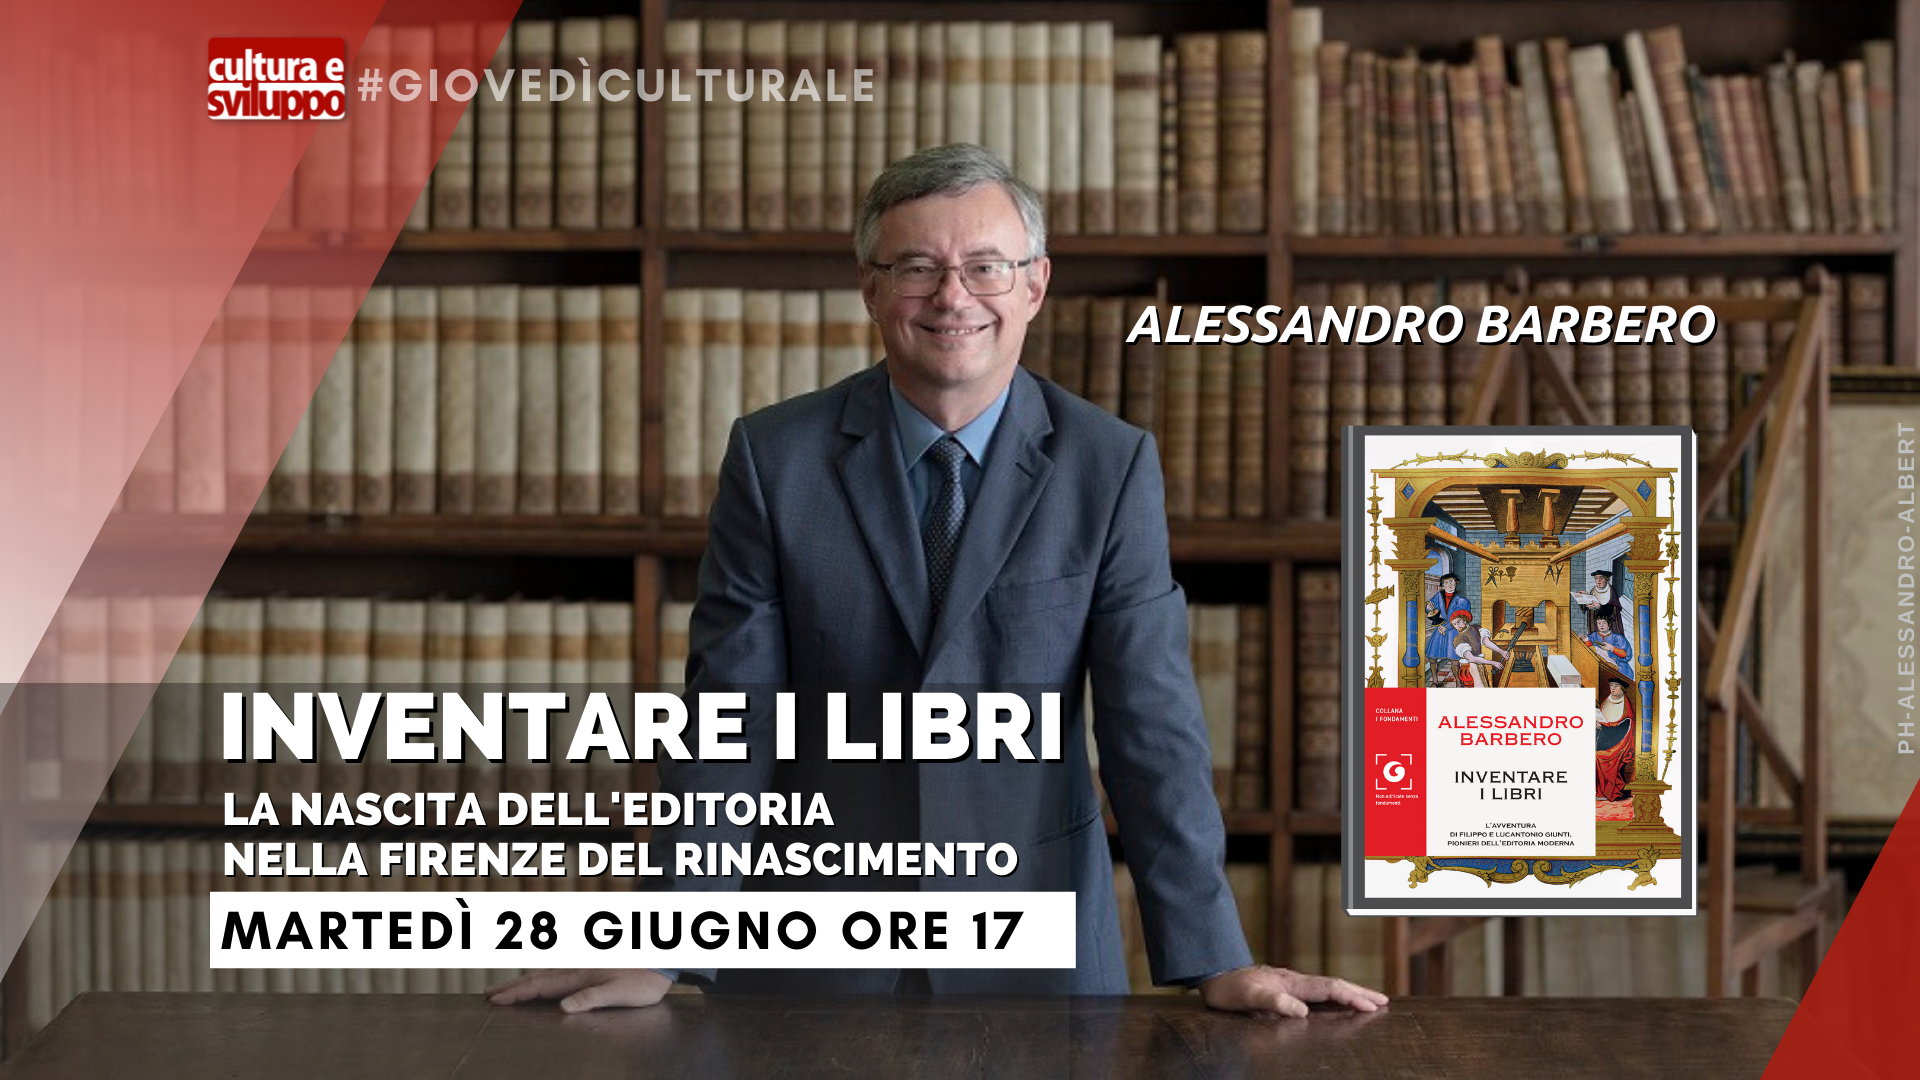 “Inventare i libri”: con Alessandro Barbero i pionieri dell’editoria moderna